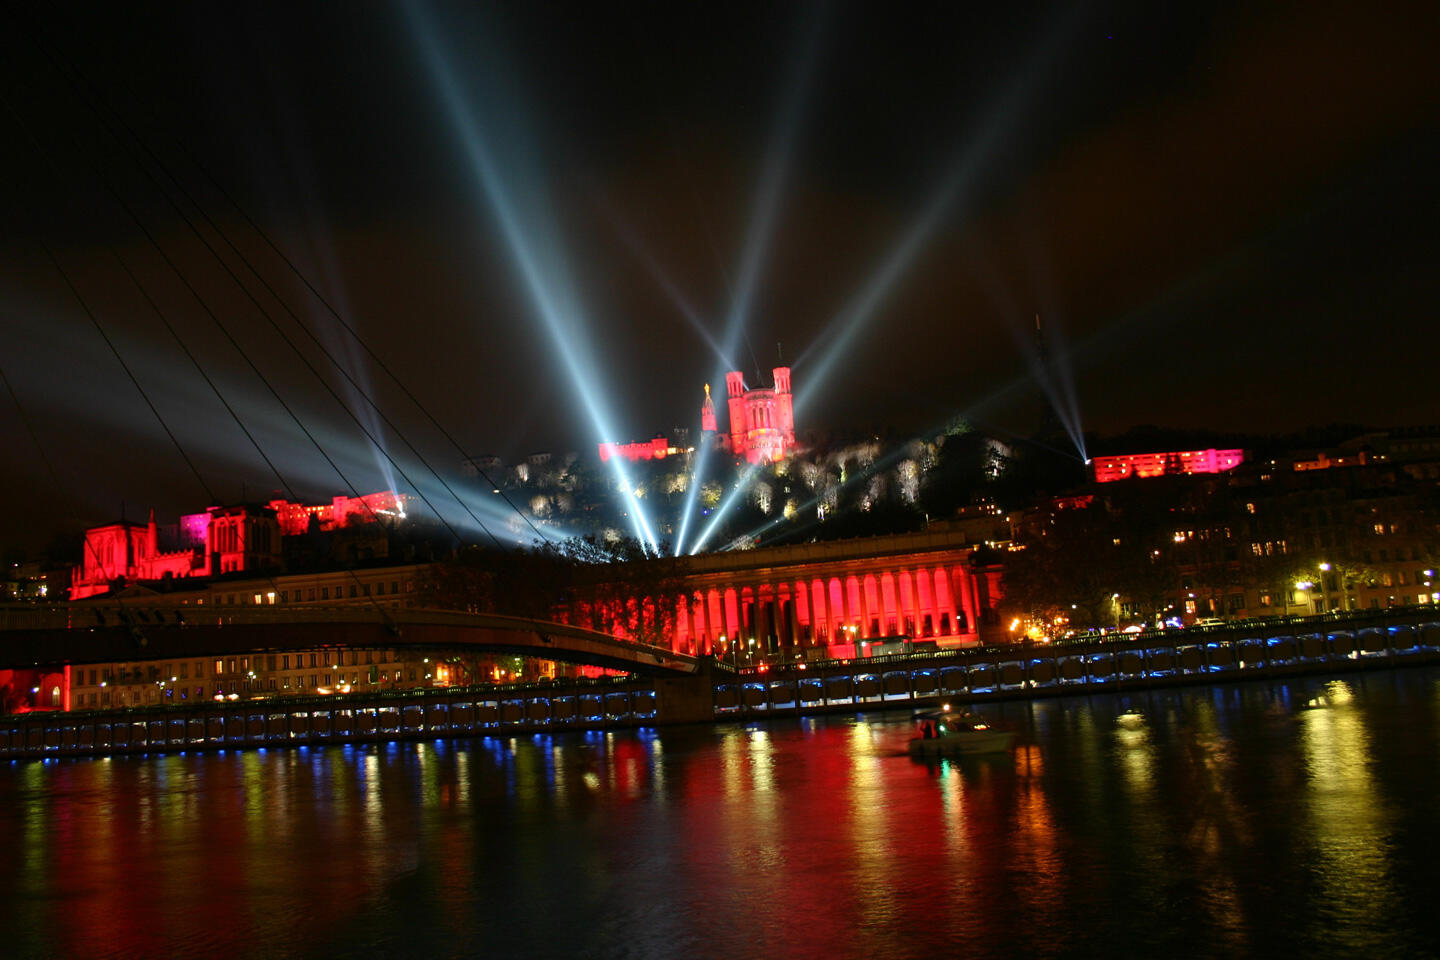 Una vista nocturna de Lyon, con las iluminaciones rojas de la Basílica de Fourvière y del histórico Palacio de Justicia, haces de luz cruzando el cielo por encima del puente, y los reflejos de las luces sobre el Saona durante la Fiesta de las Luces.